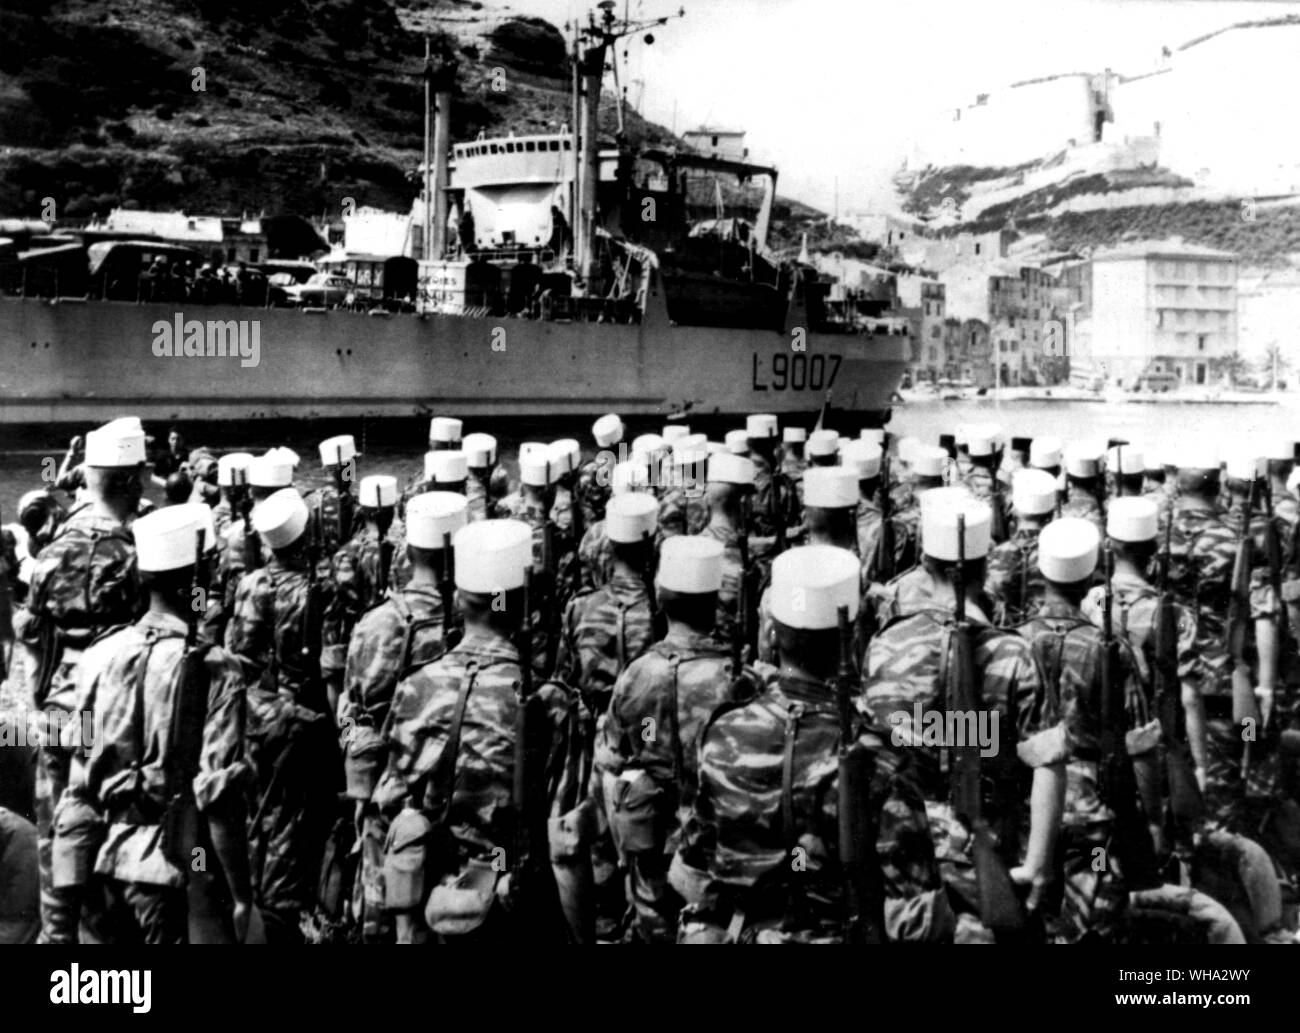 25 Juin 1960 : Légion étrangère française du premier bataillon de ligne après avoir débarqué à Bonifacio, Corse du Sud. Banque D'Images